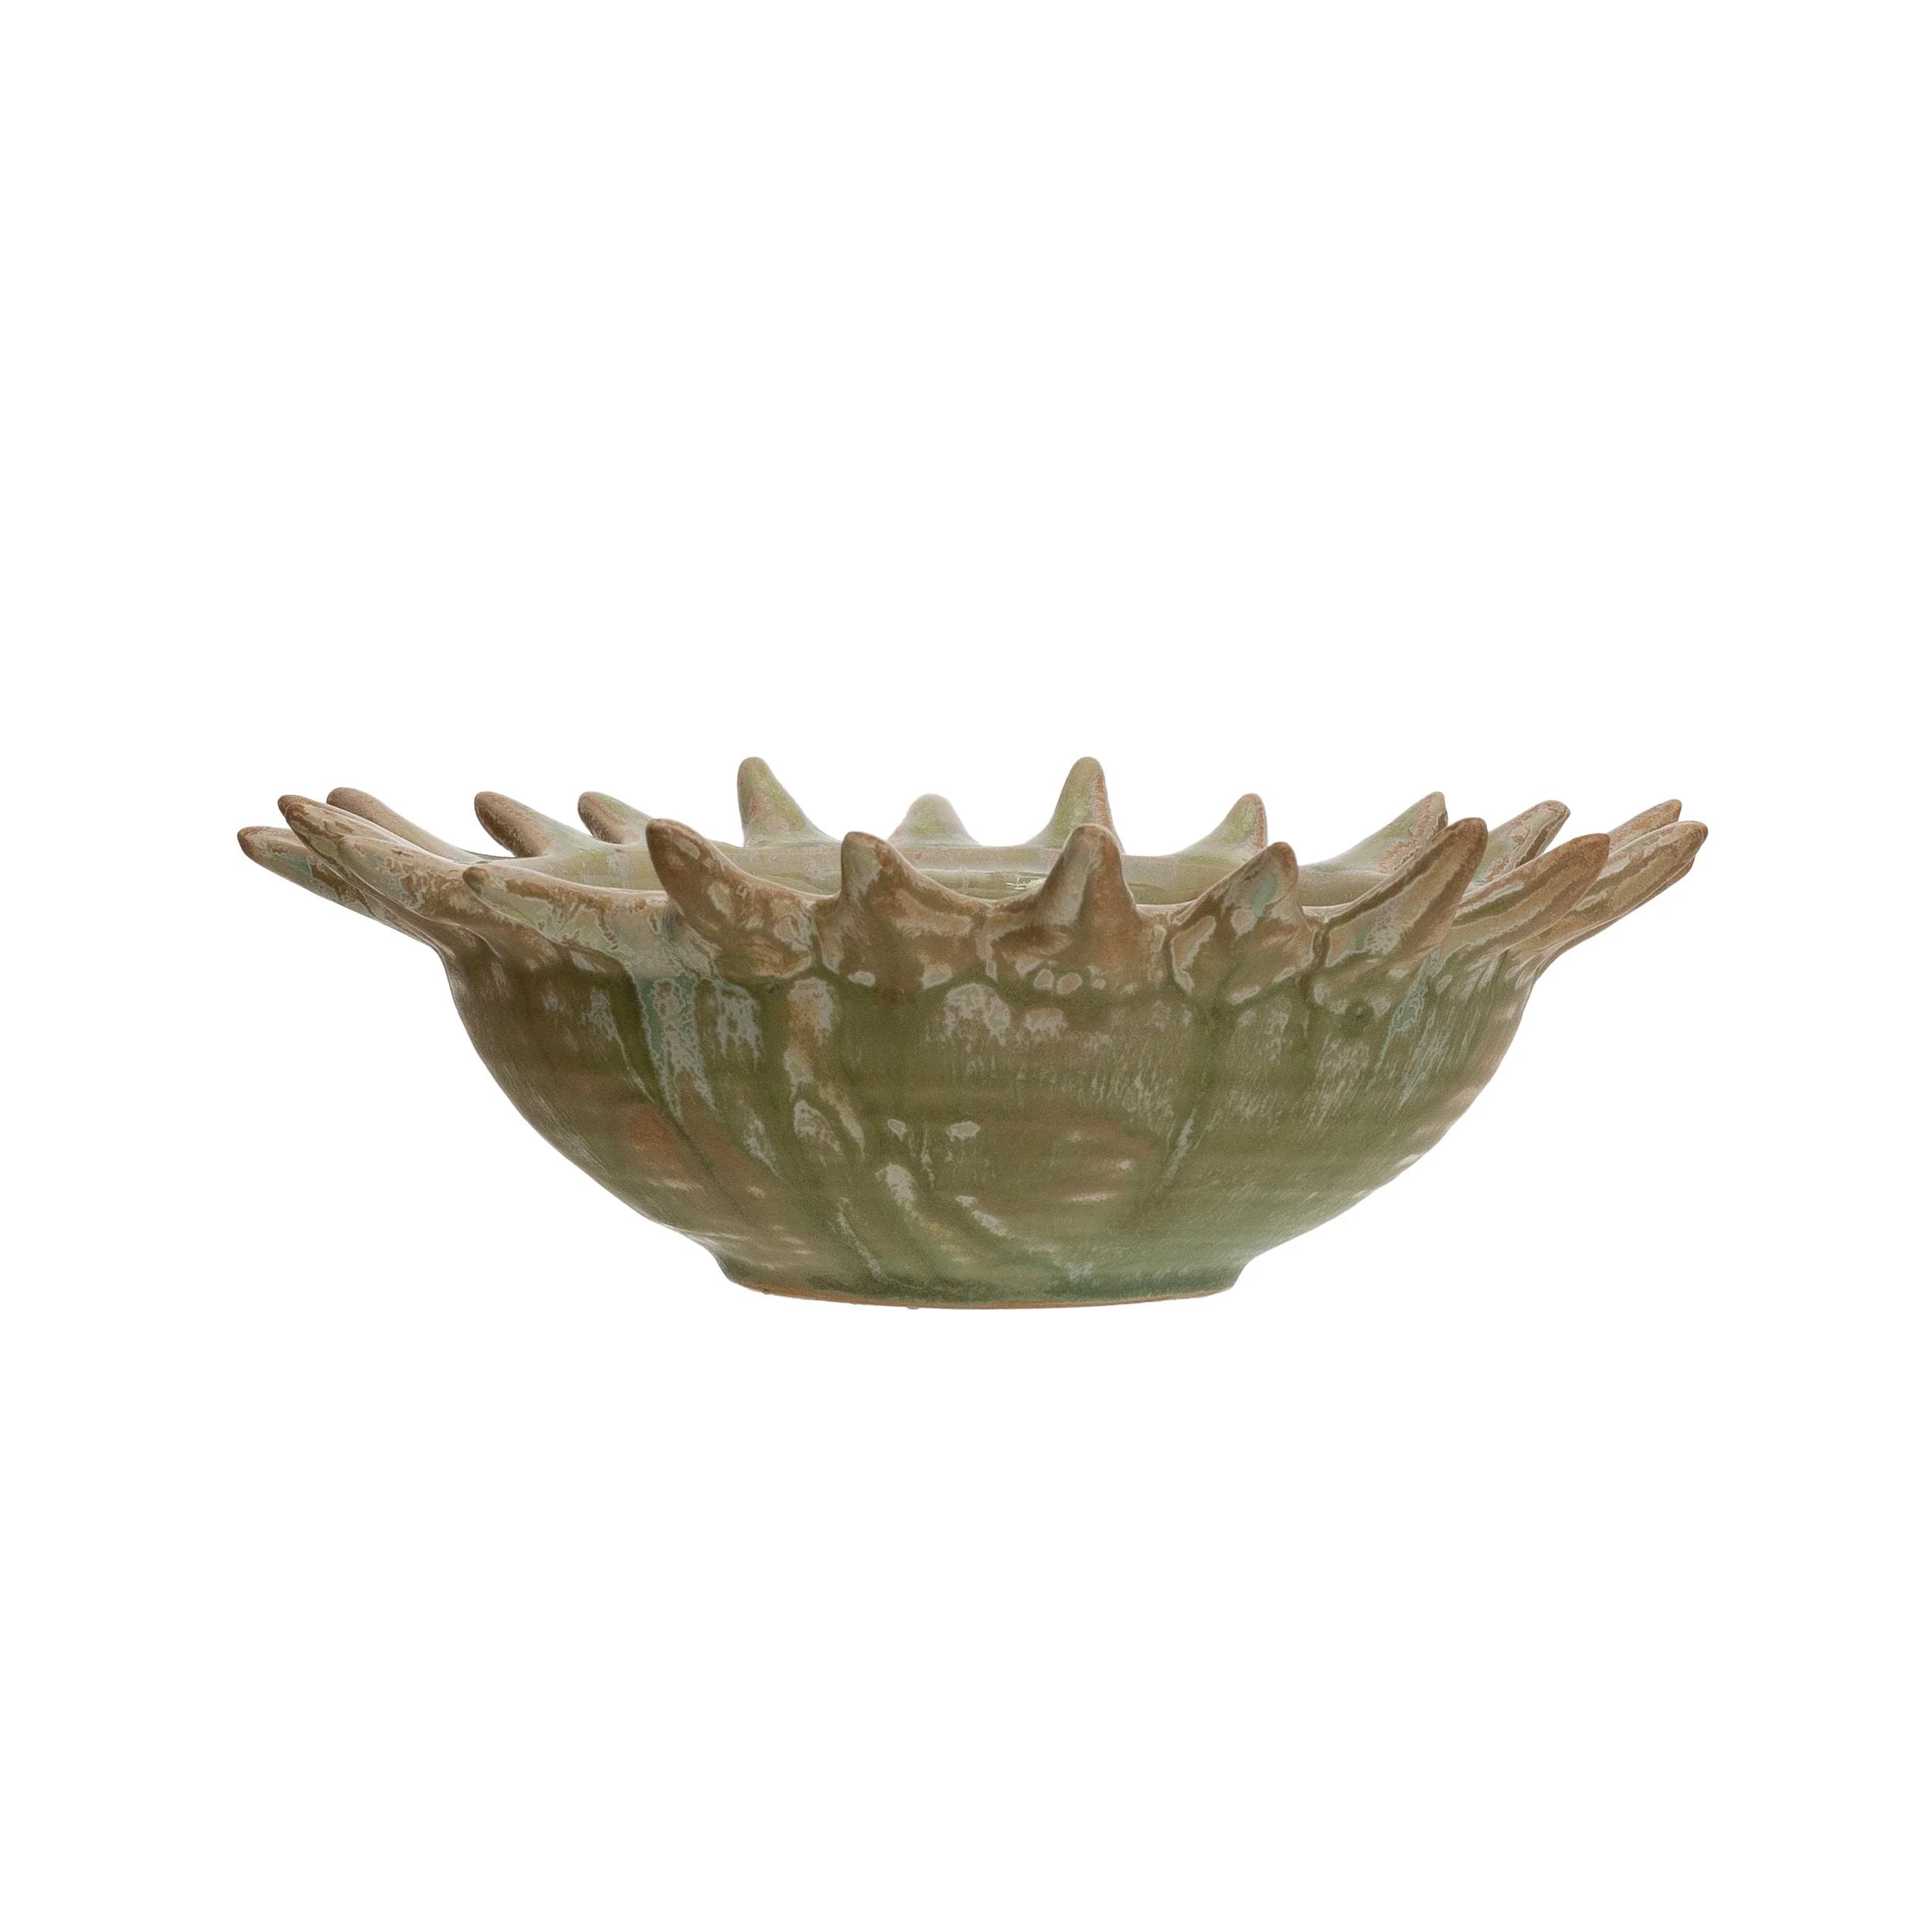 Stoneware Sunburst Shaped Serving Bowl with Glaze